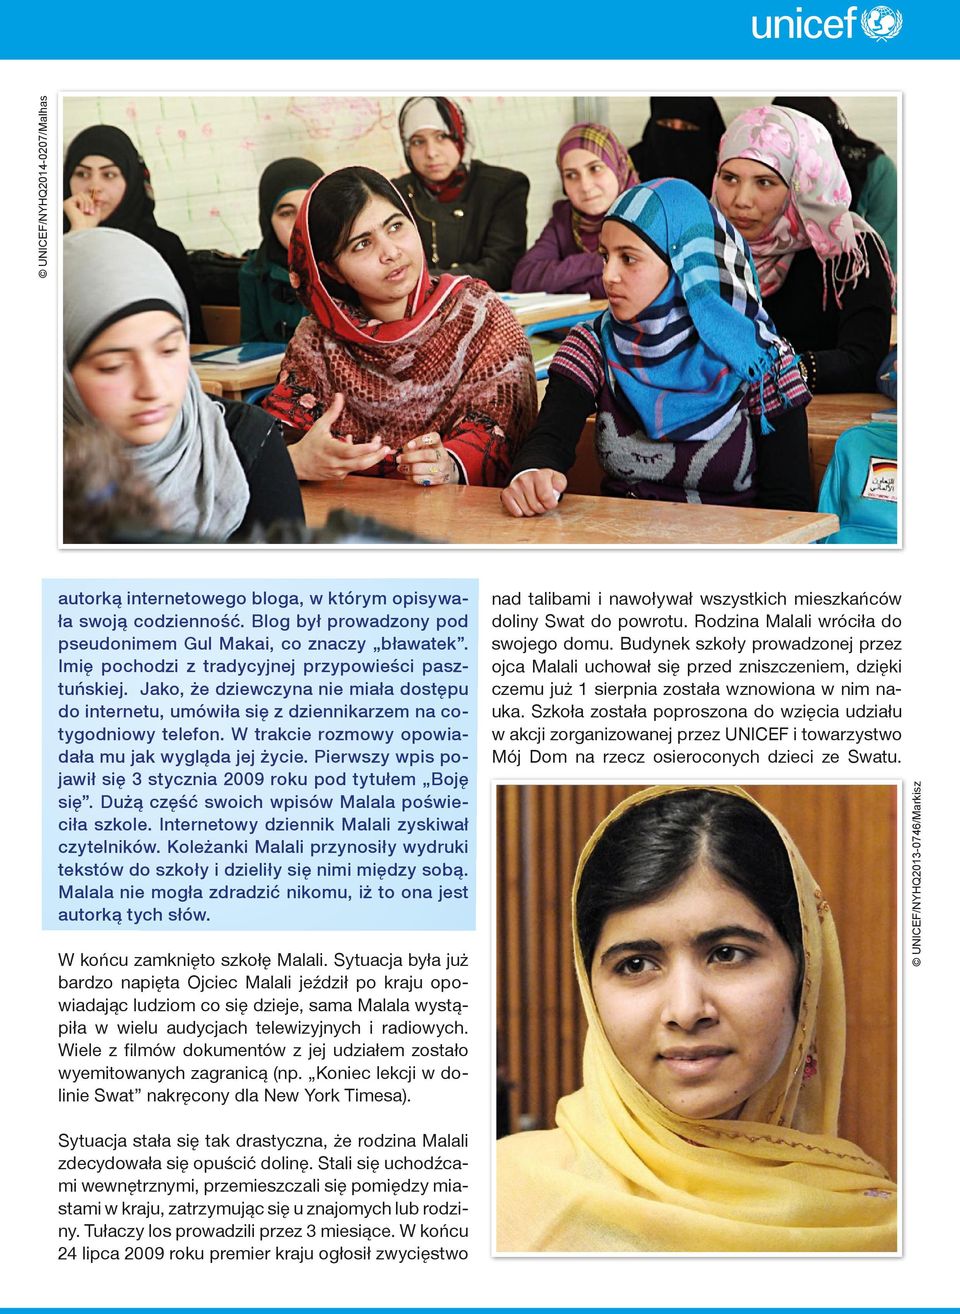 W trakcie rozmowy opowiadała mu jak wygląda jej życie. Pierwszy wpis pojawił się 3 stycznia 2009 roku pod tytułem Boję się. Dużą część swoich wpisów Malala poświeciła szkole.